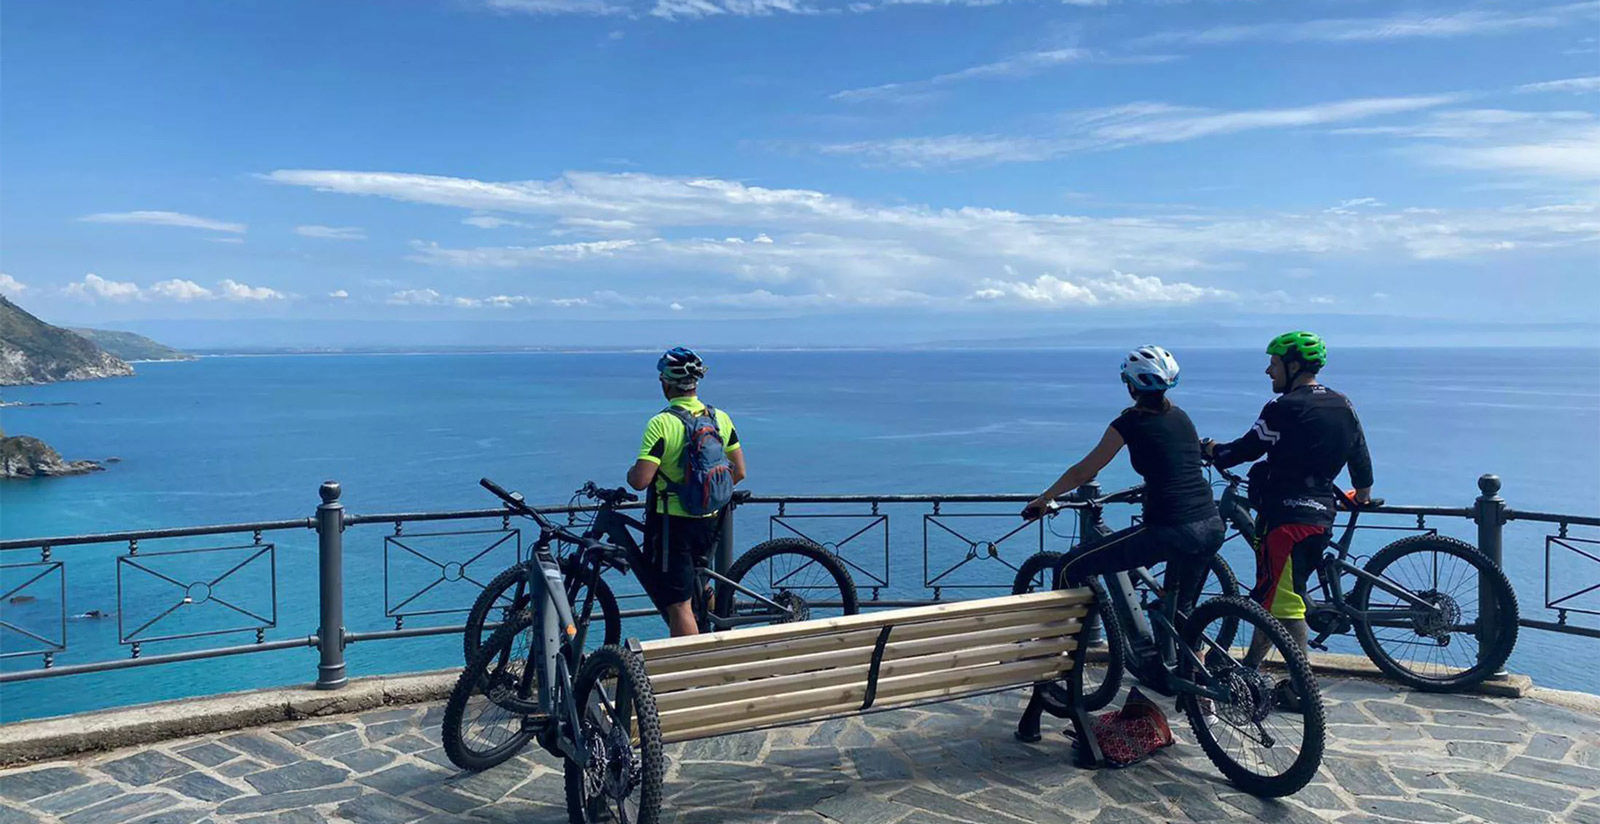 Capovaticano Resort - E-bikes and excursions 19